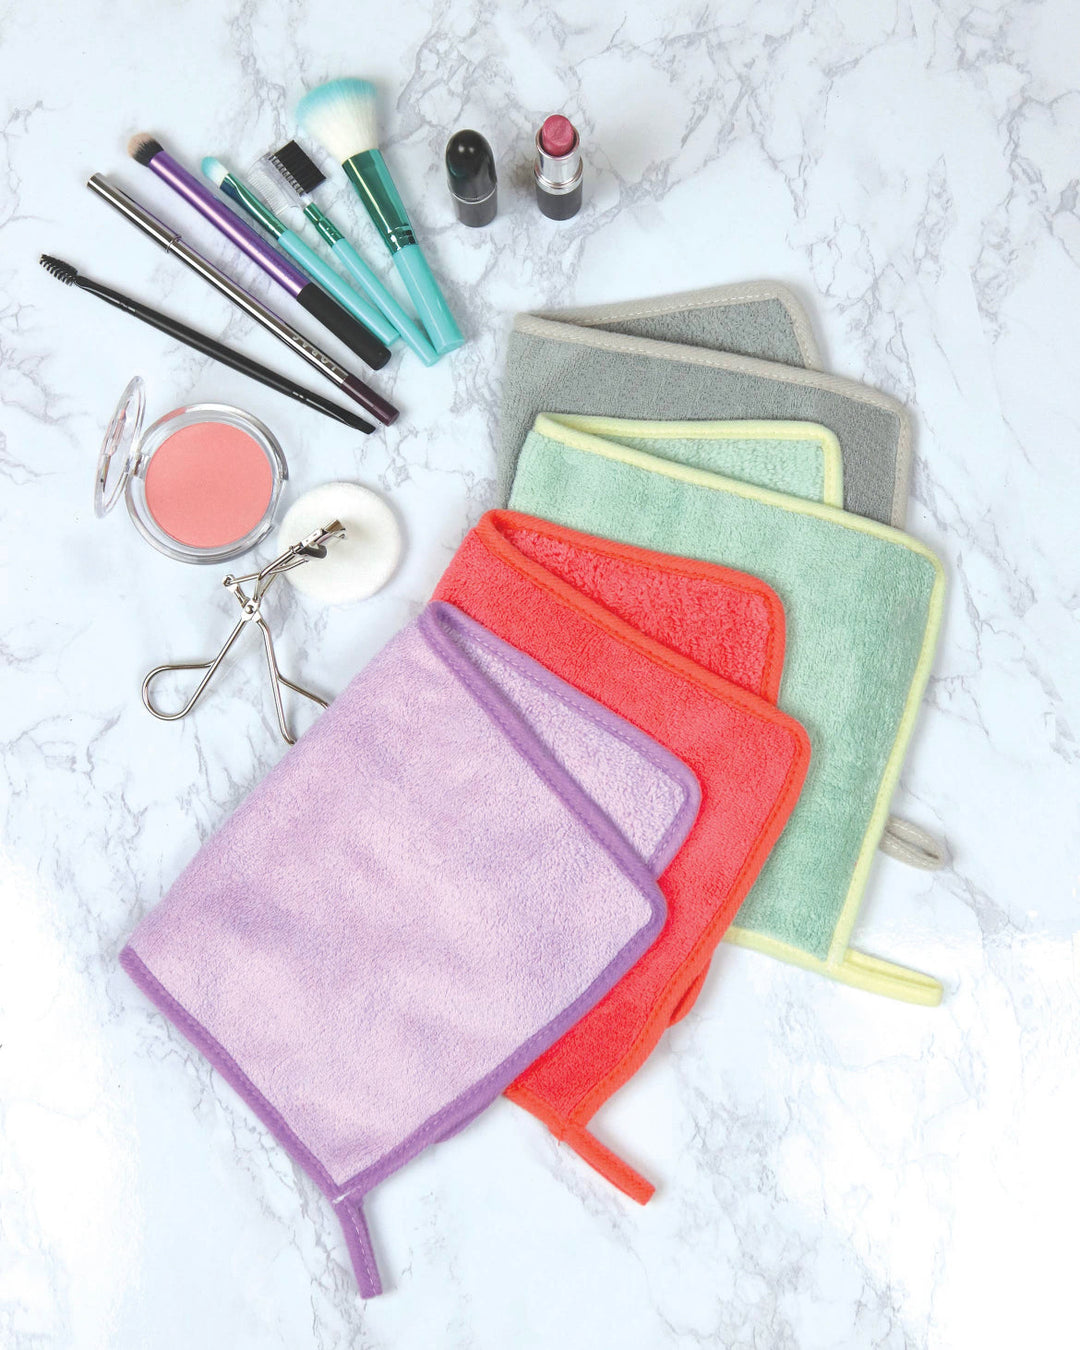 Makeup remover towel - Jayden Layne